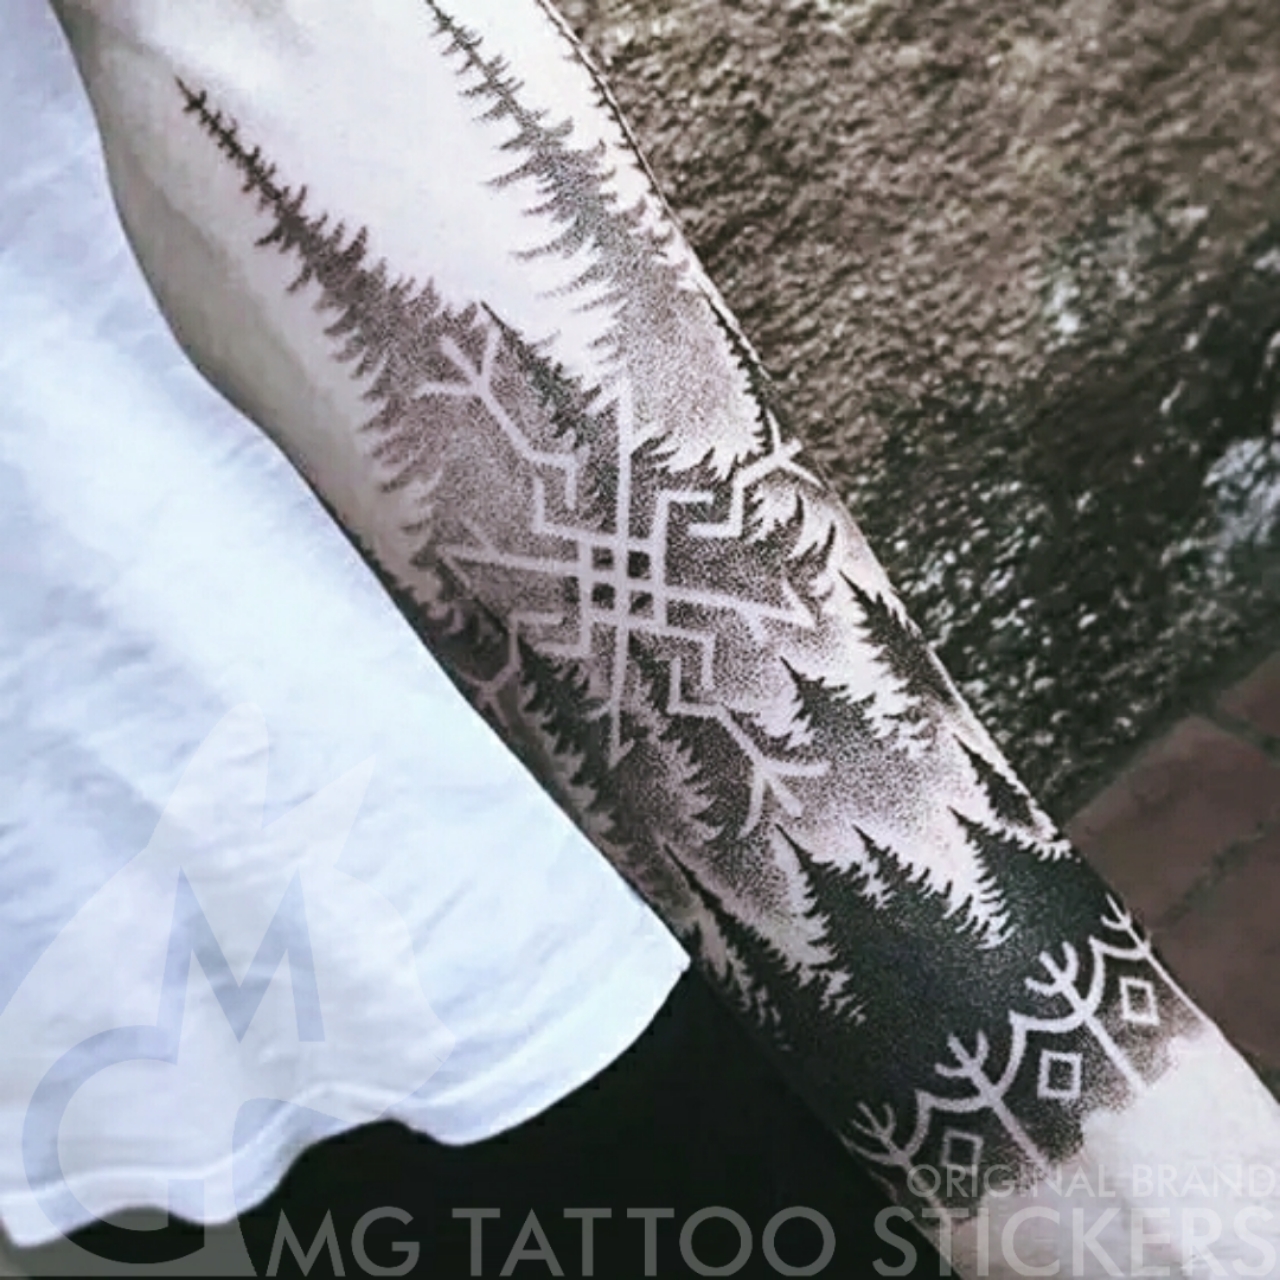 MG纹身贴/手绘TATTOO/黑灰花臂/创意黑灰渐变森林神秘主义纹身贴